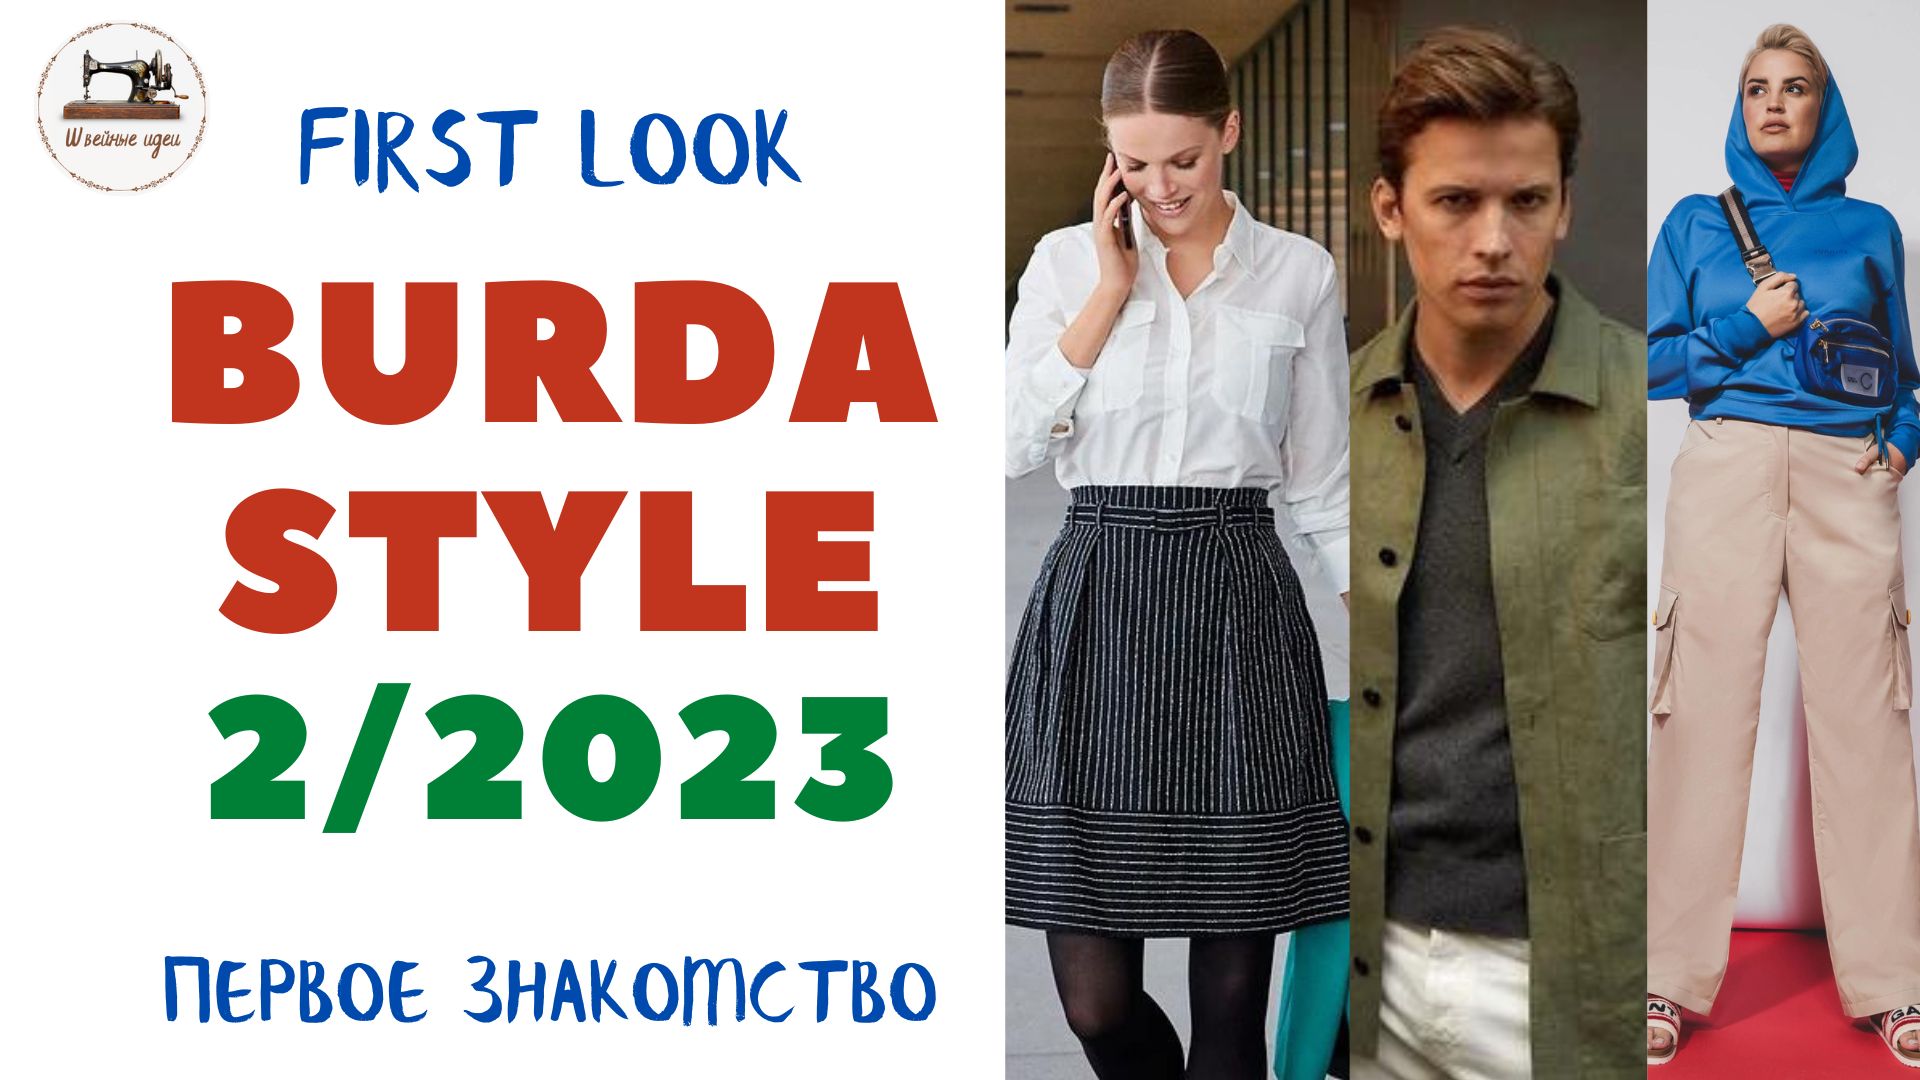 Burda STYLE 2/2023  Первый анонс. Деловой стиль, спорт-шик, для мужчин. Размеры с 36 по 48